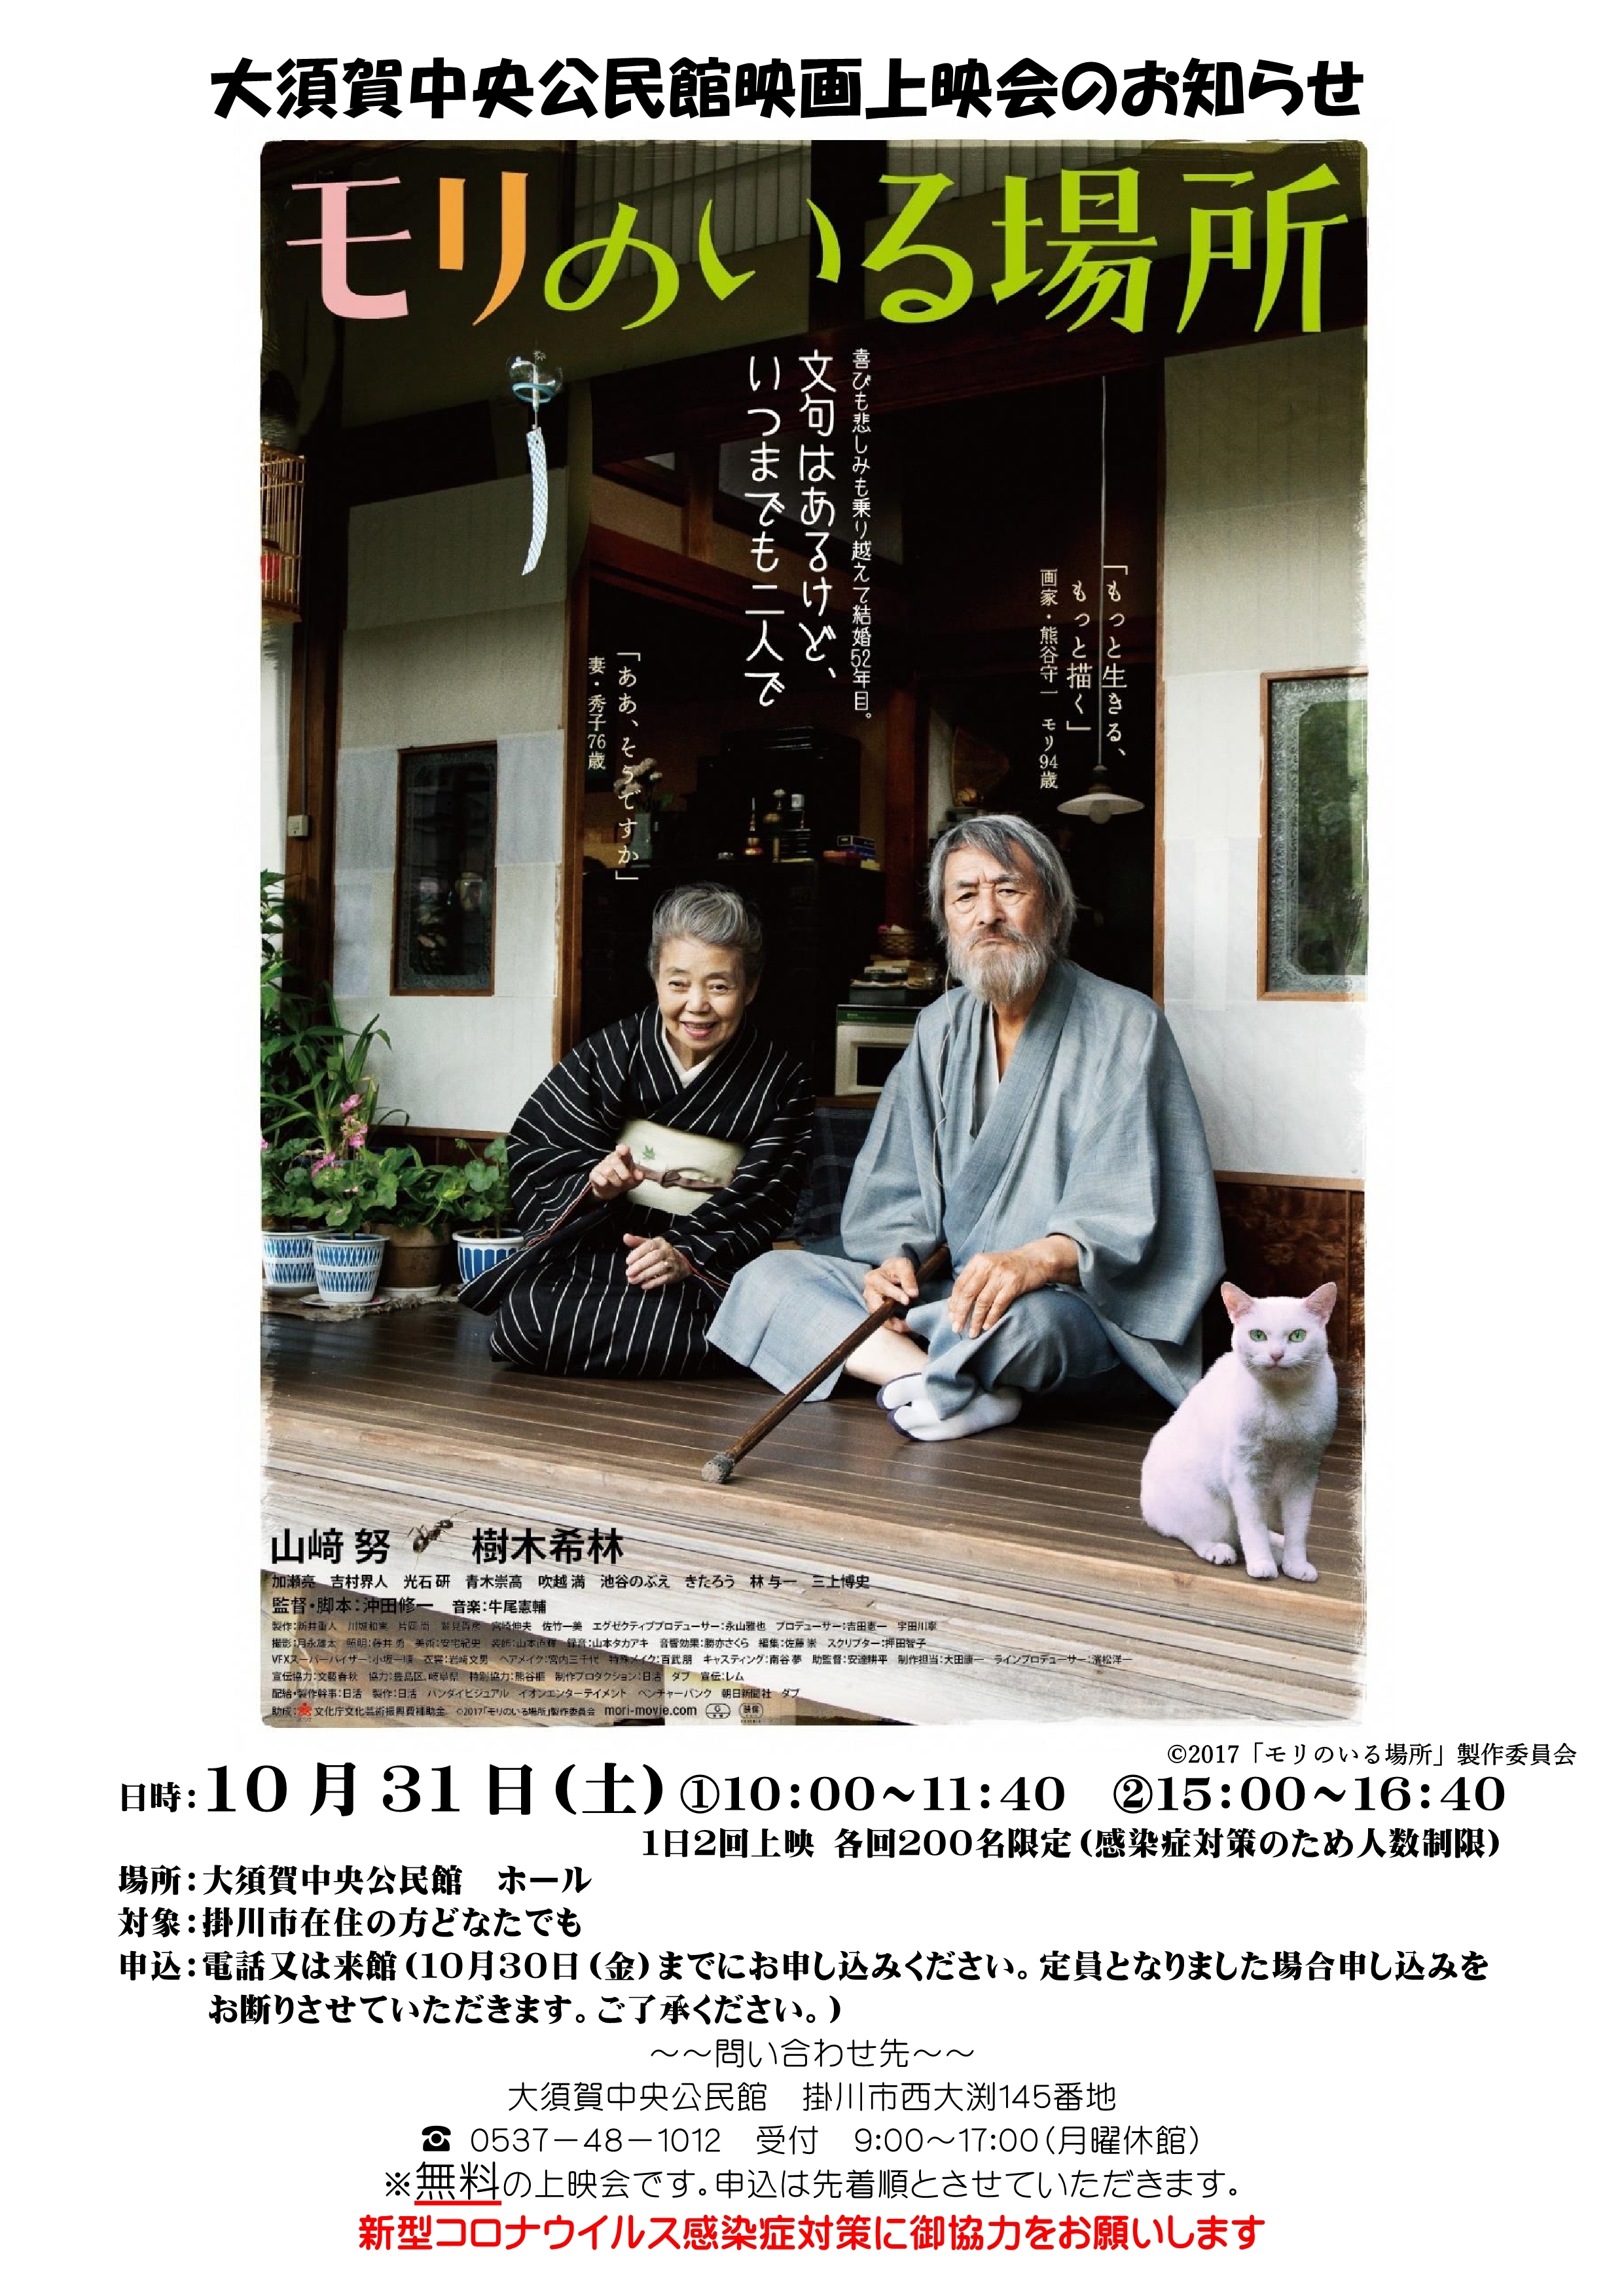 大須賀中央公民館映画上映会「モリのいる場所」のお知らせポスター